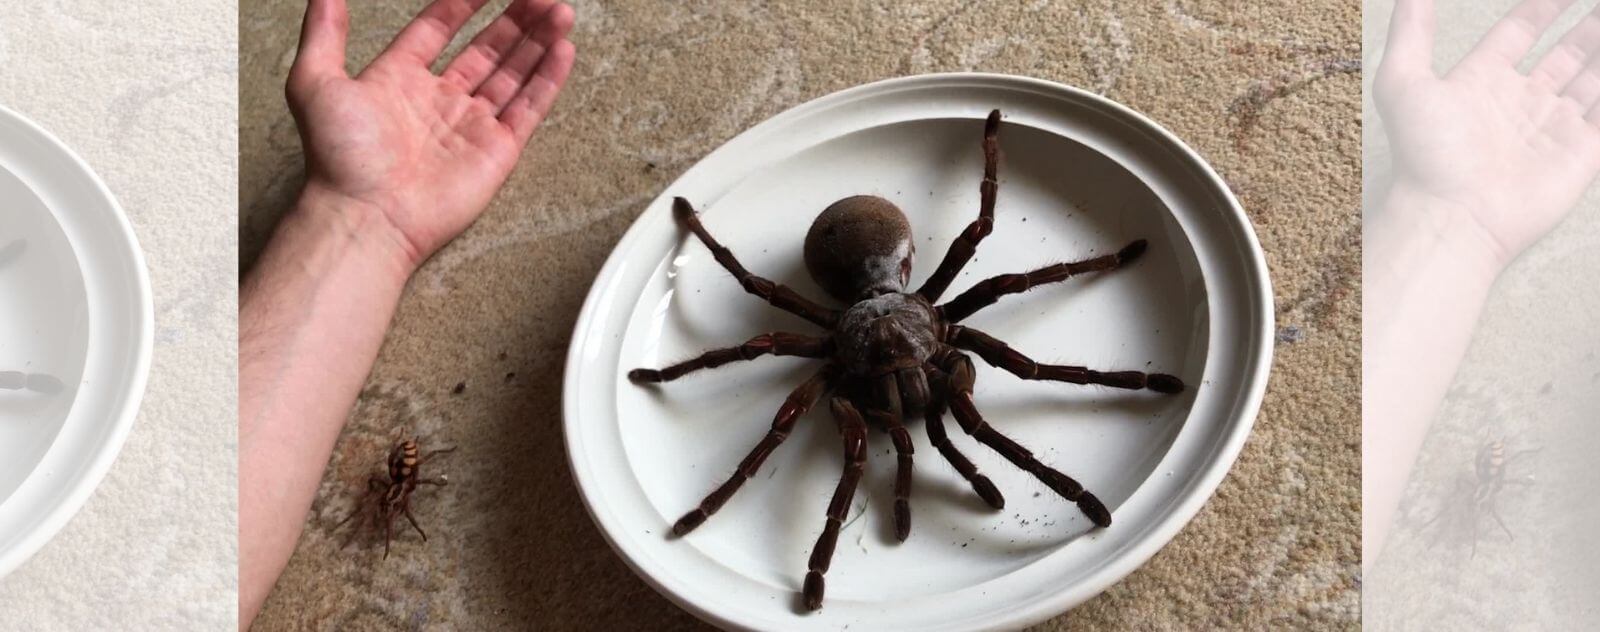 Tarántula gigante Goliat, la araña más grande del mundo junto a una mano humana